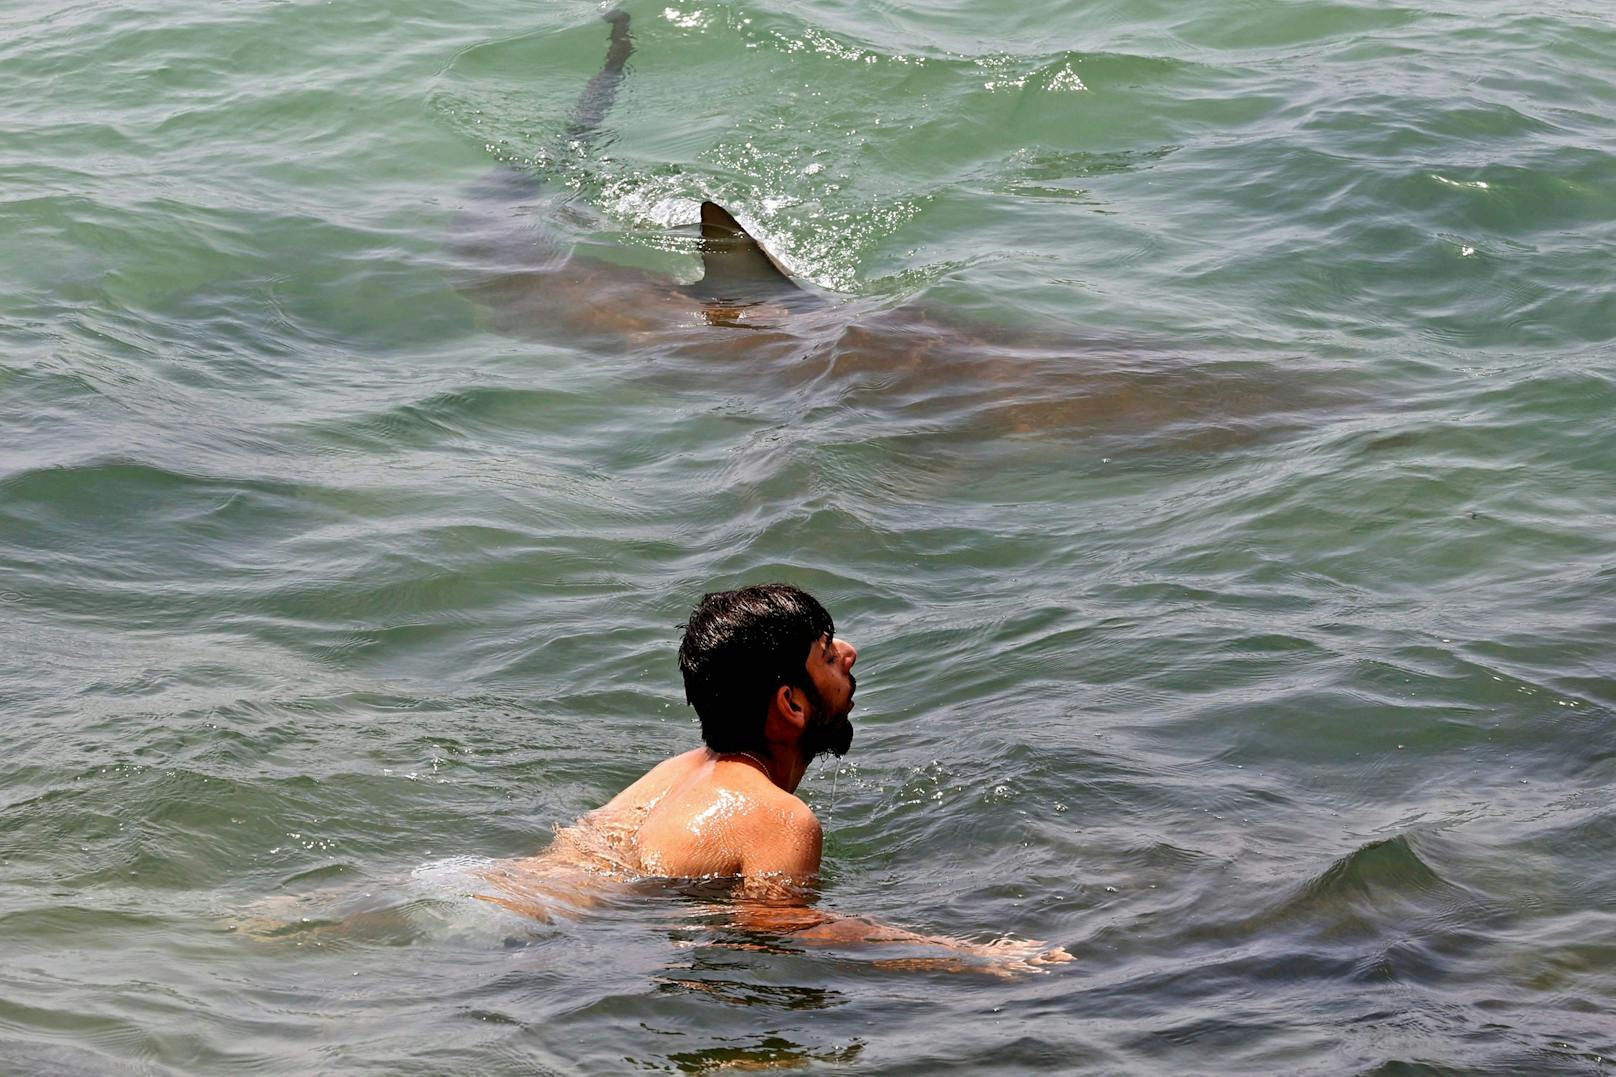 Von wegen Panik: Im israelischen Badeort Hadera kommen sich Mensch und Raubfisch derzeit besonders nahe.